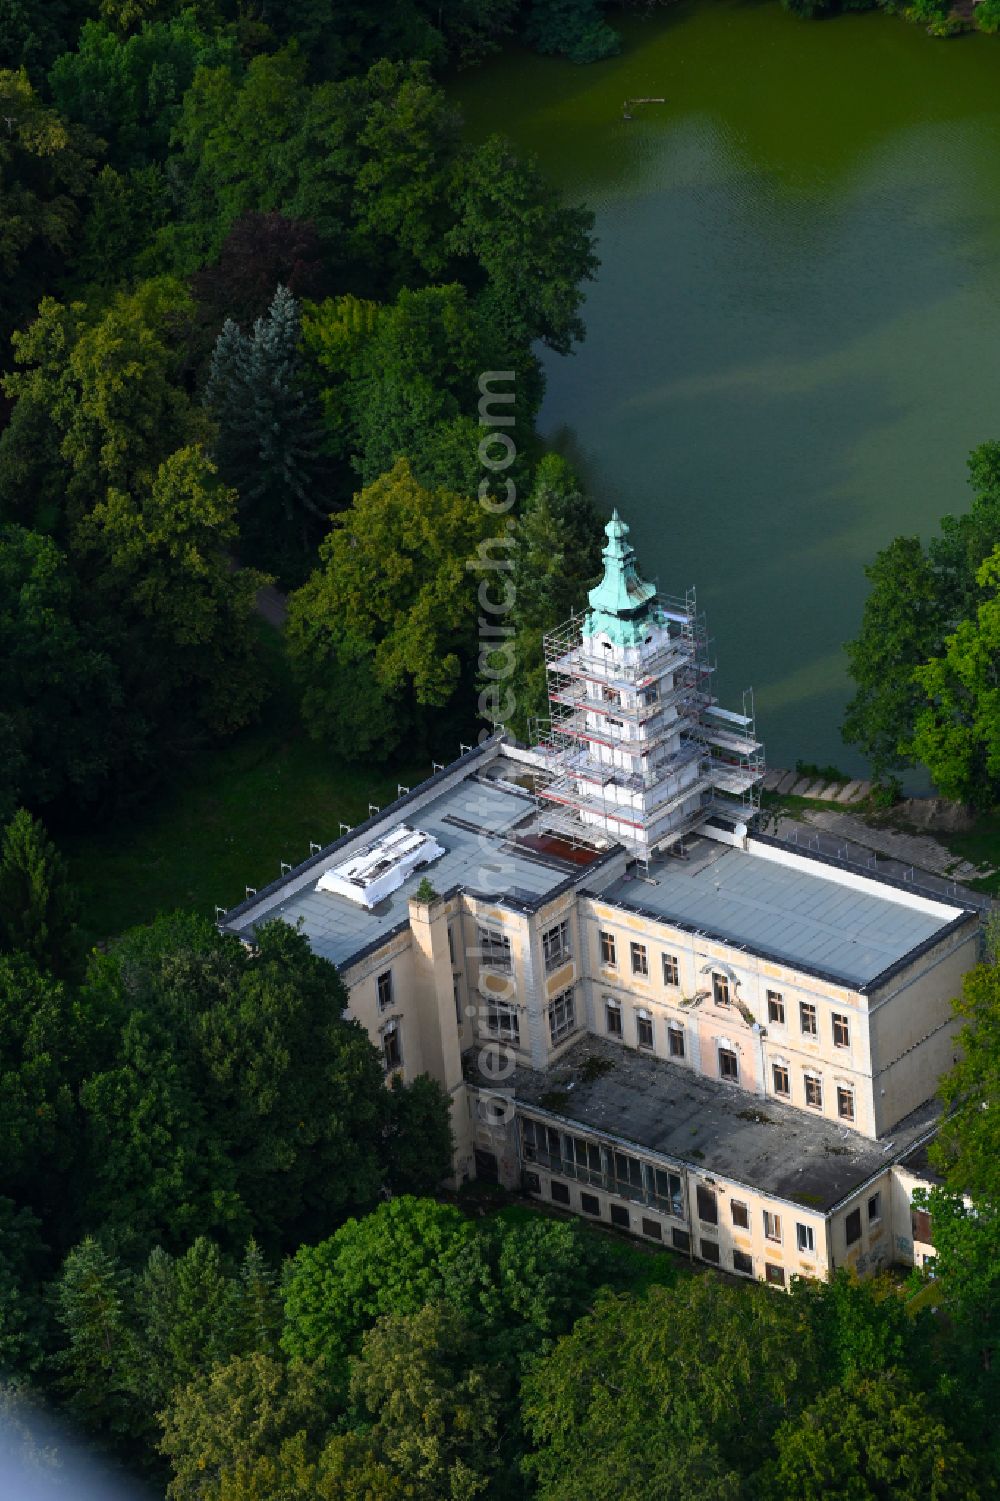 Aerial image Schönwalde - palace Dammsmuehle on lake Muehlenteich in Schoenwalde in the state Brandenburg, Germany